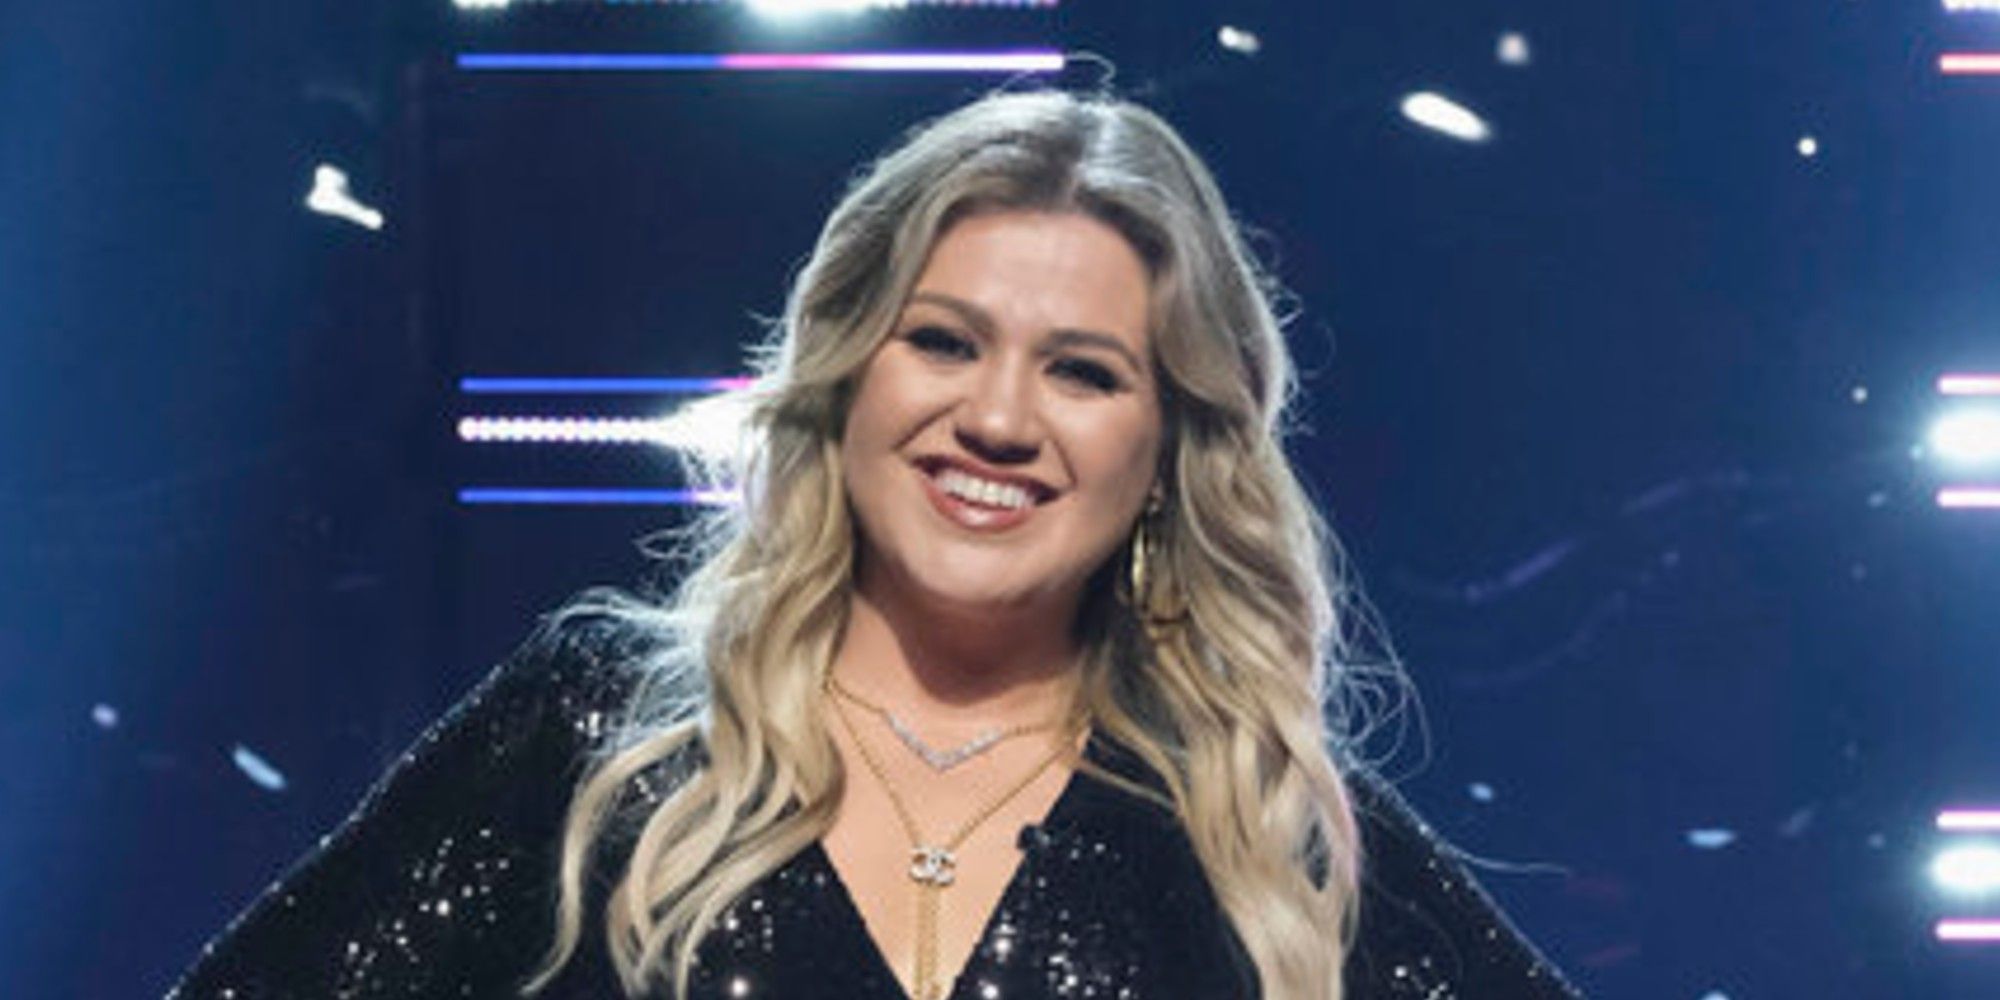 Kelly Clarkson on The Voice season 19